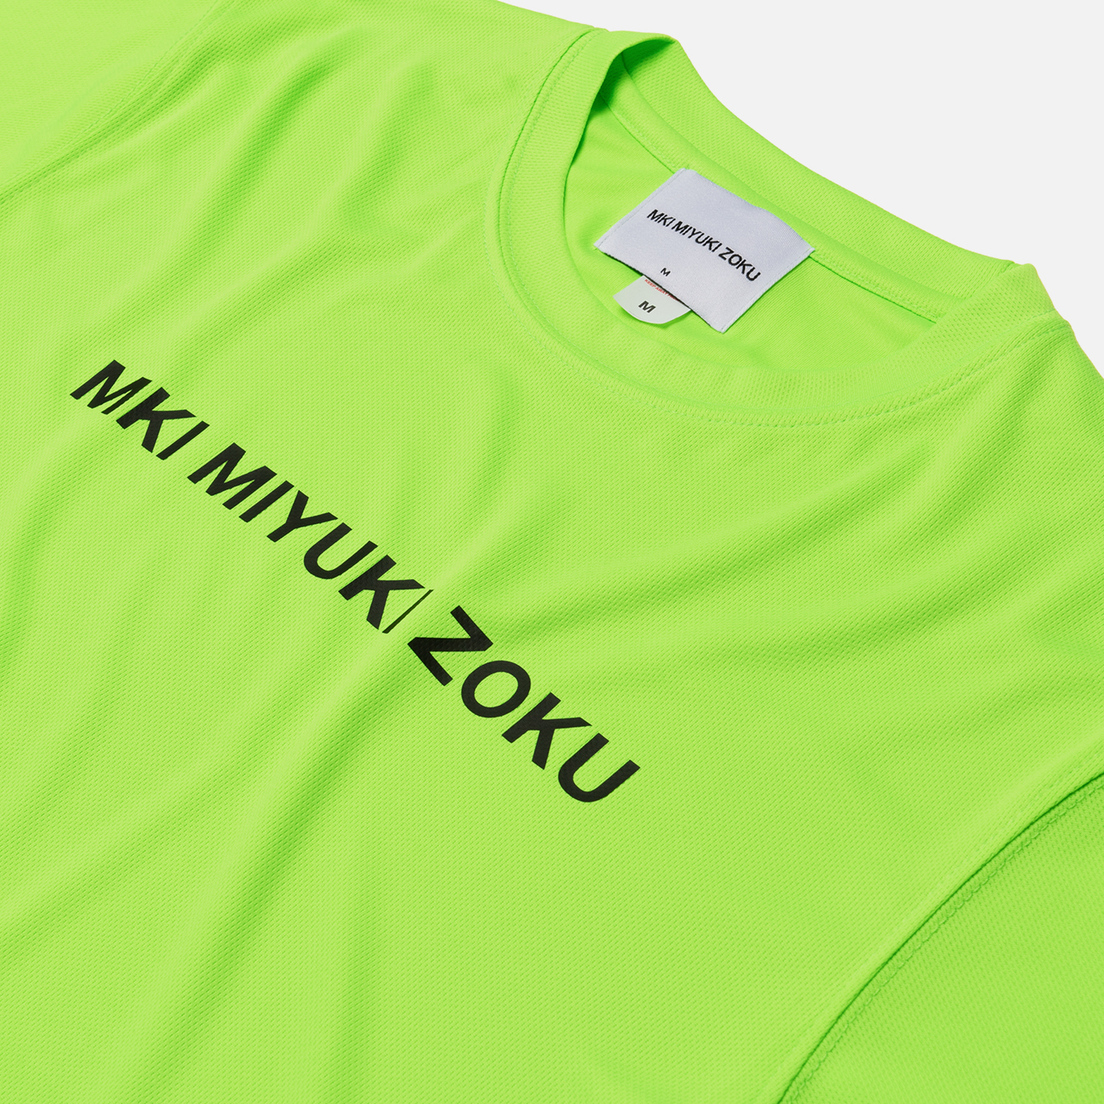 MKI Miyuki-Zoku Мужская футболка Neon Logo